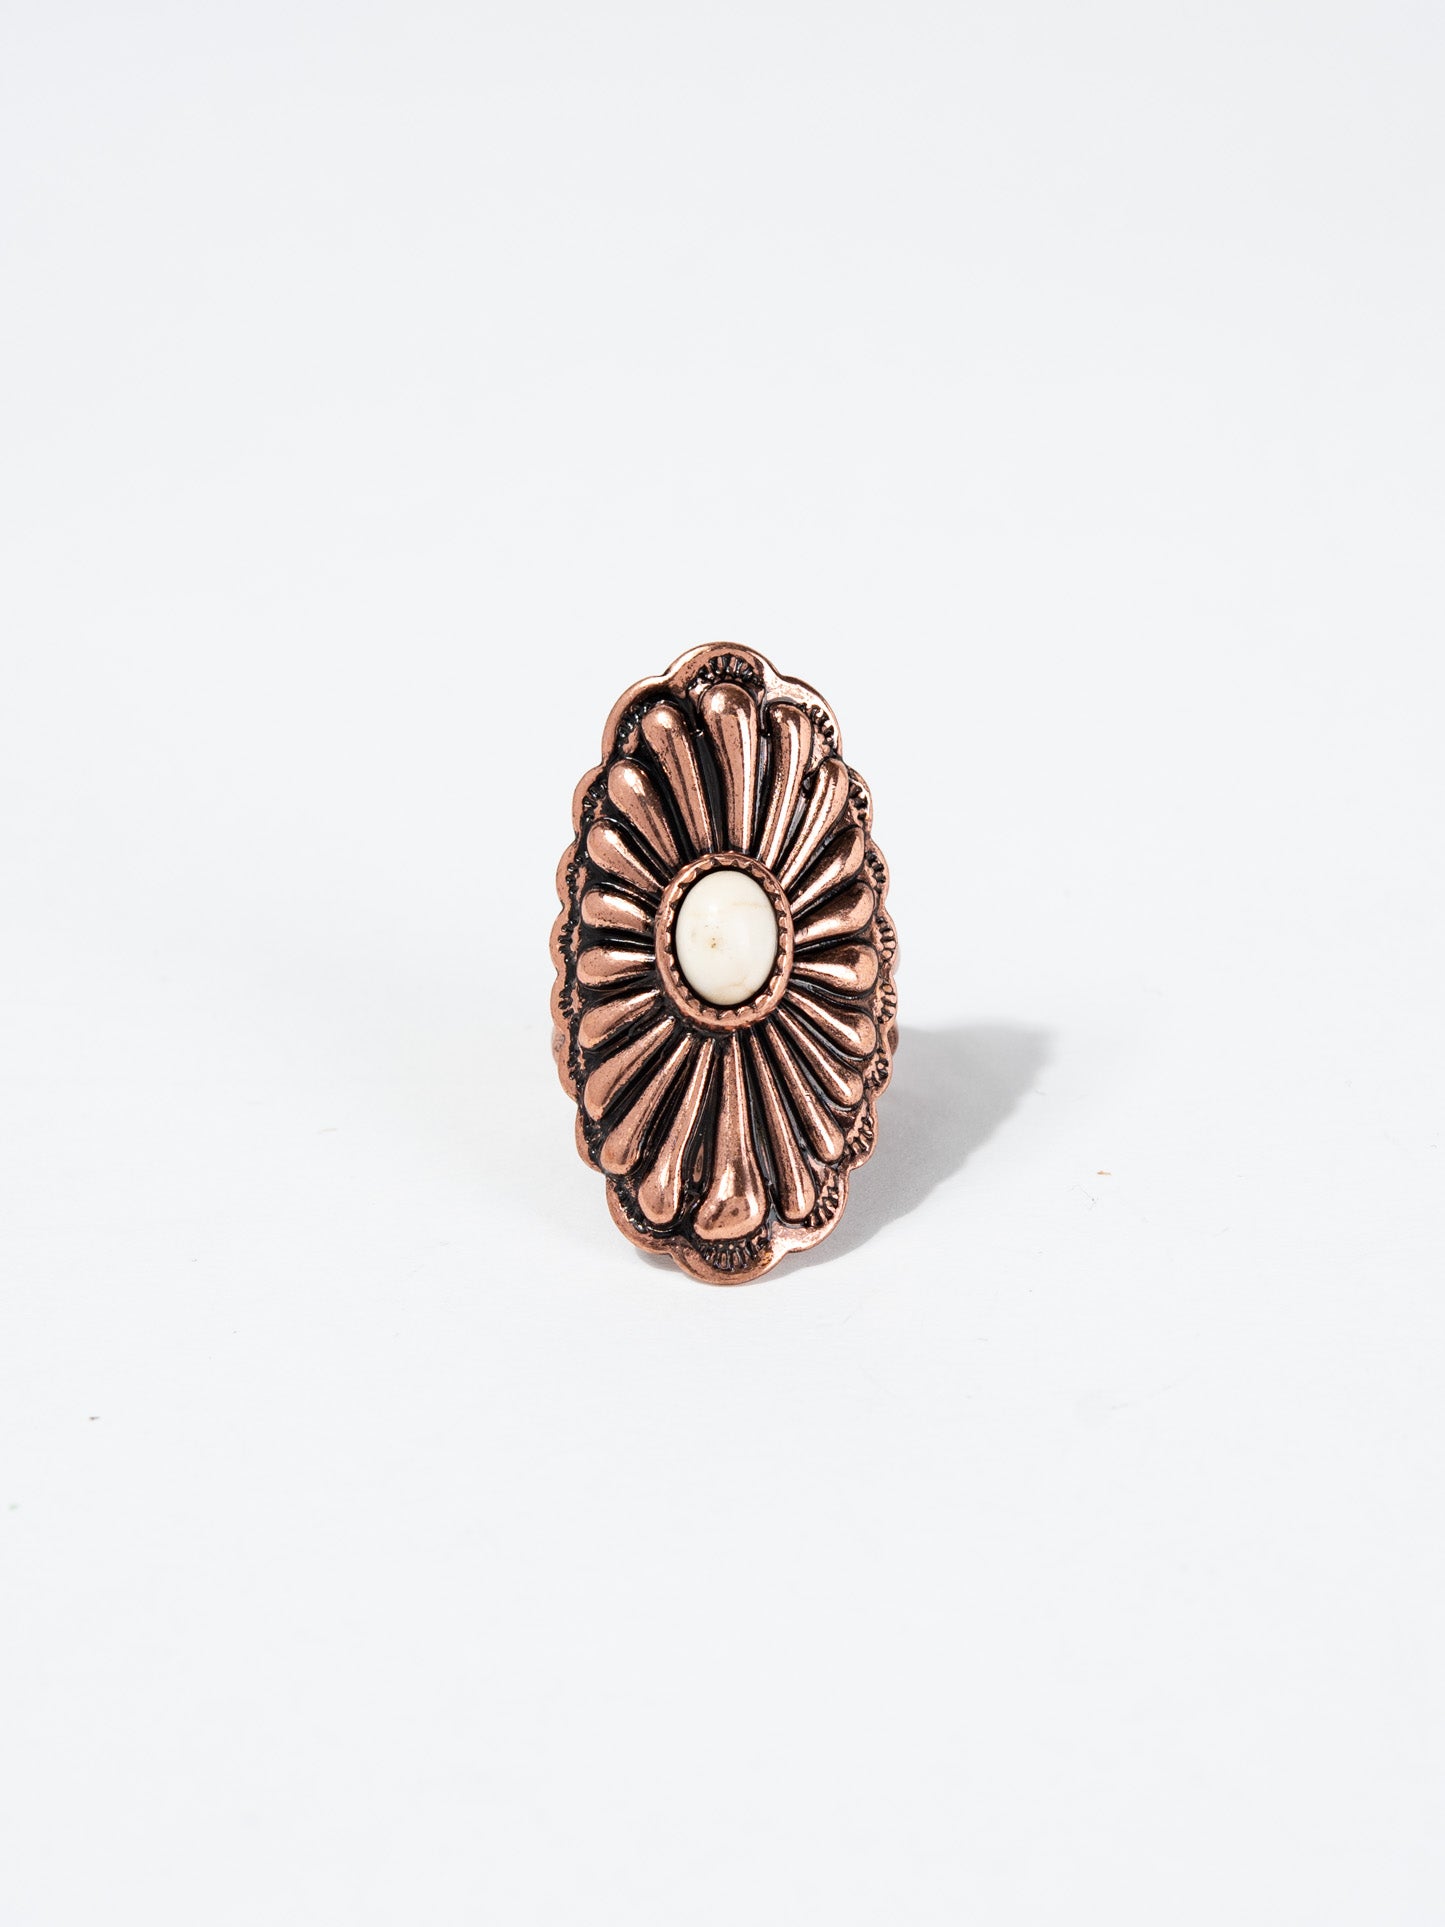 Reiko Western Design Concho Cuff Ring